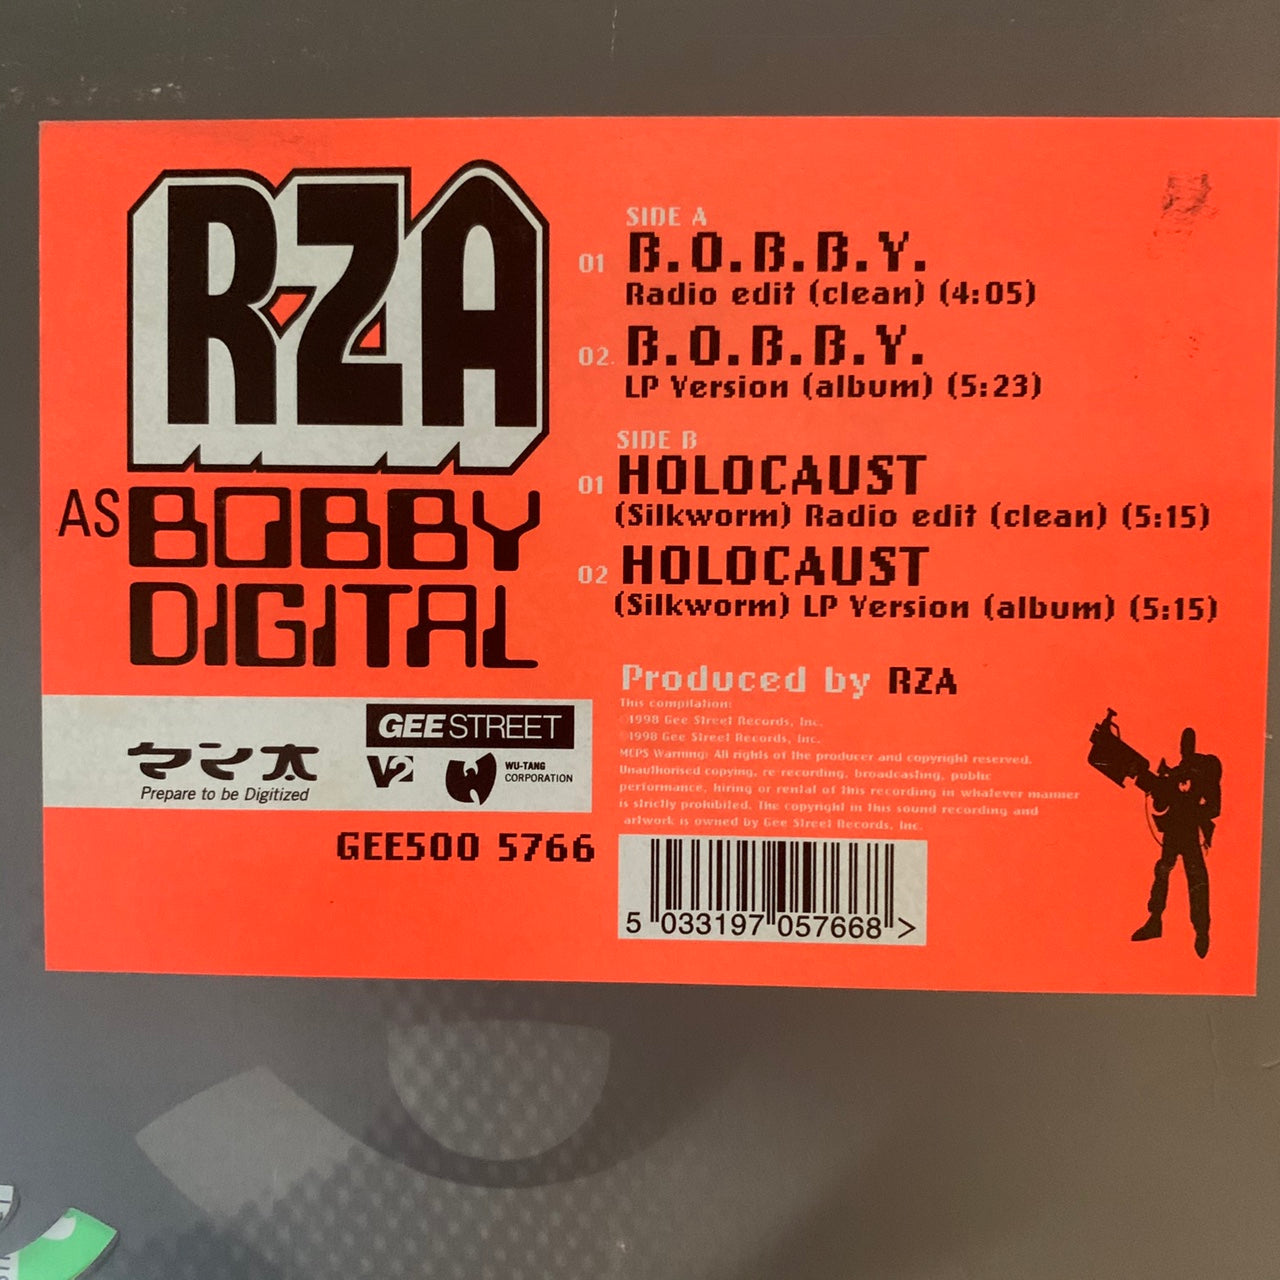 RZA as Bobby Digital “Bobby” / “Holocaust” 4 Track 12inch Vinyl